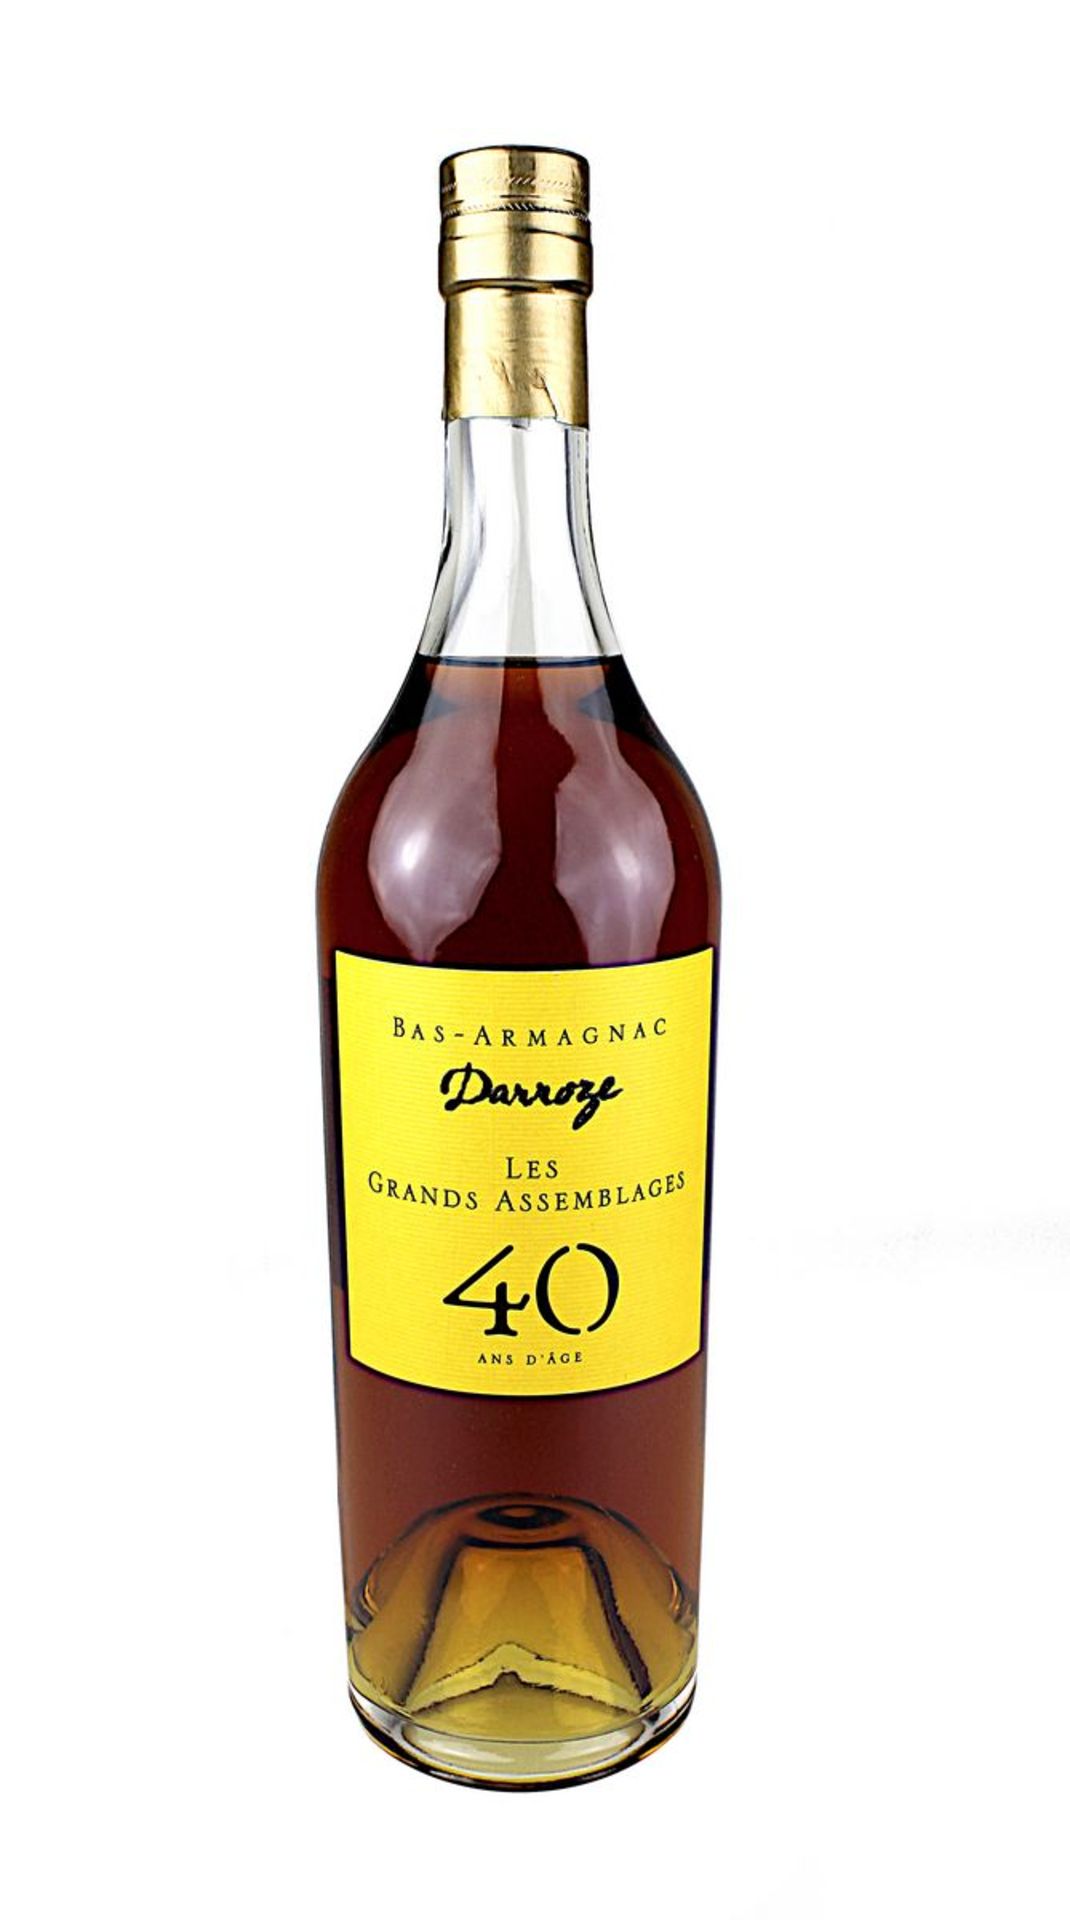 1 Flasche Bas - Armagnac Darroze, 40 ans d`age, les grands assemblages, 0,7 l, Füllhöhe: Halsansatz,